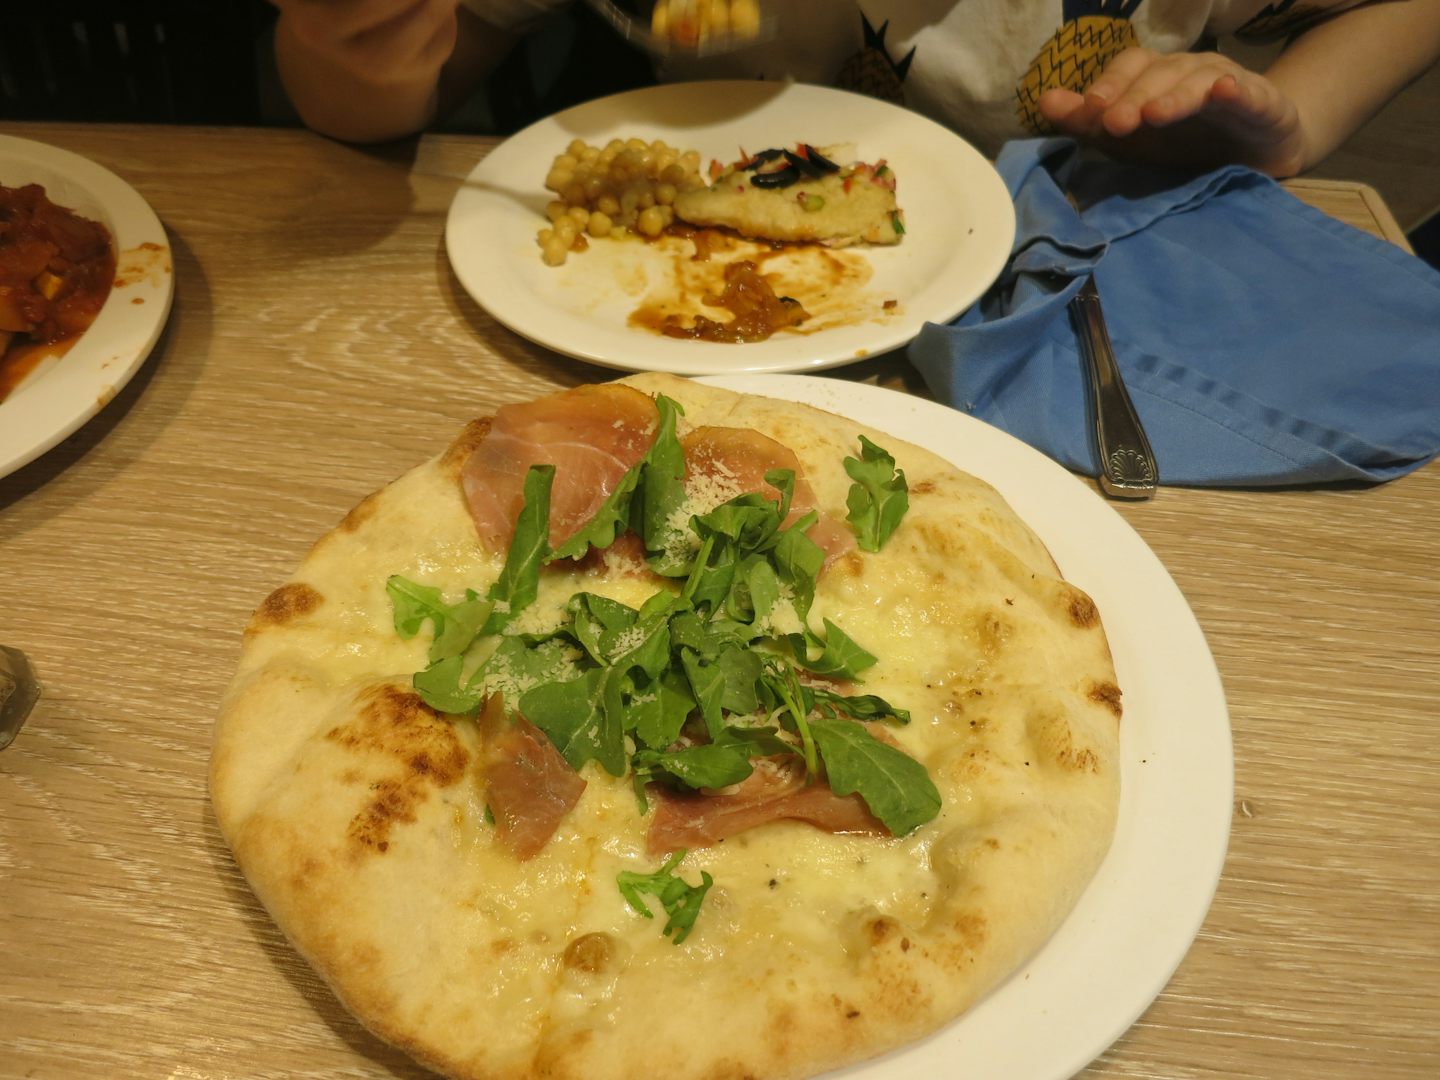 Pizza with prosciutto and arugola